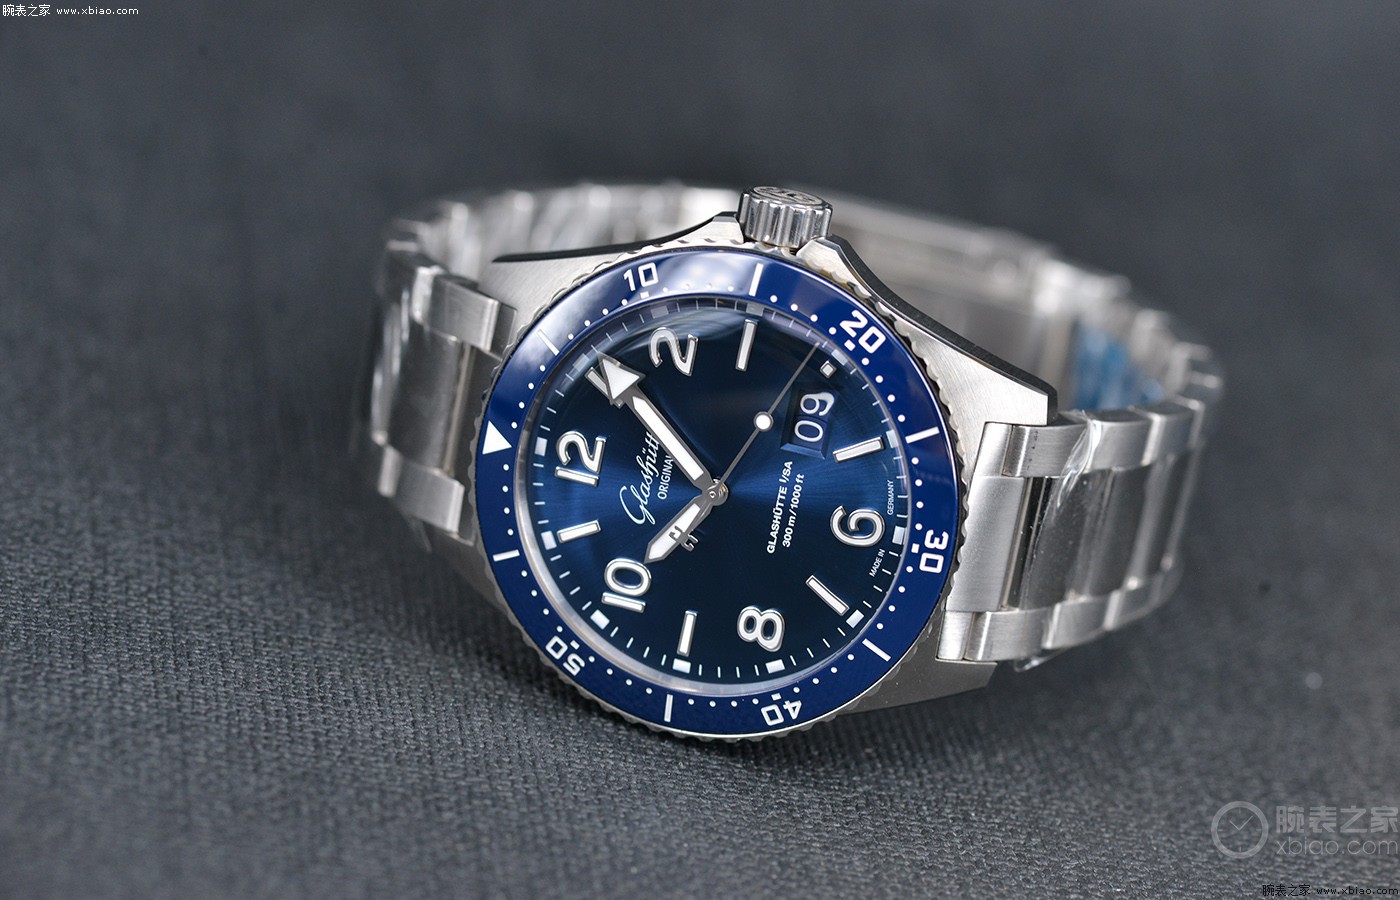 专业与实用的完美结合 品鉴格拉苏蒂原创大日历SeaQ腕表